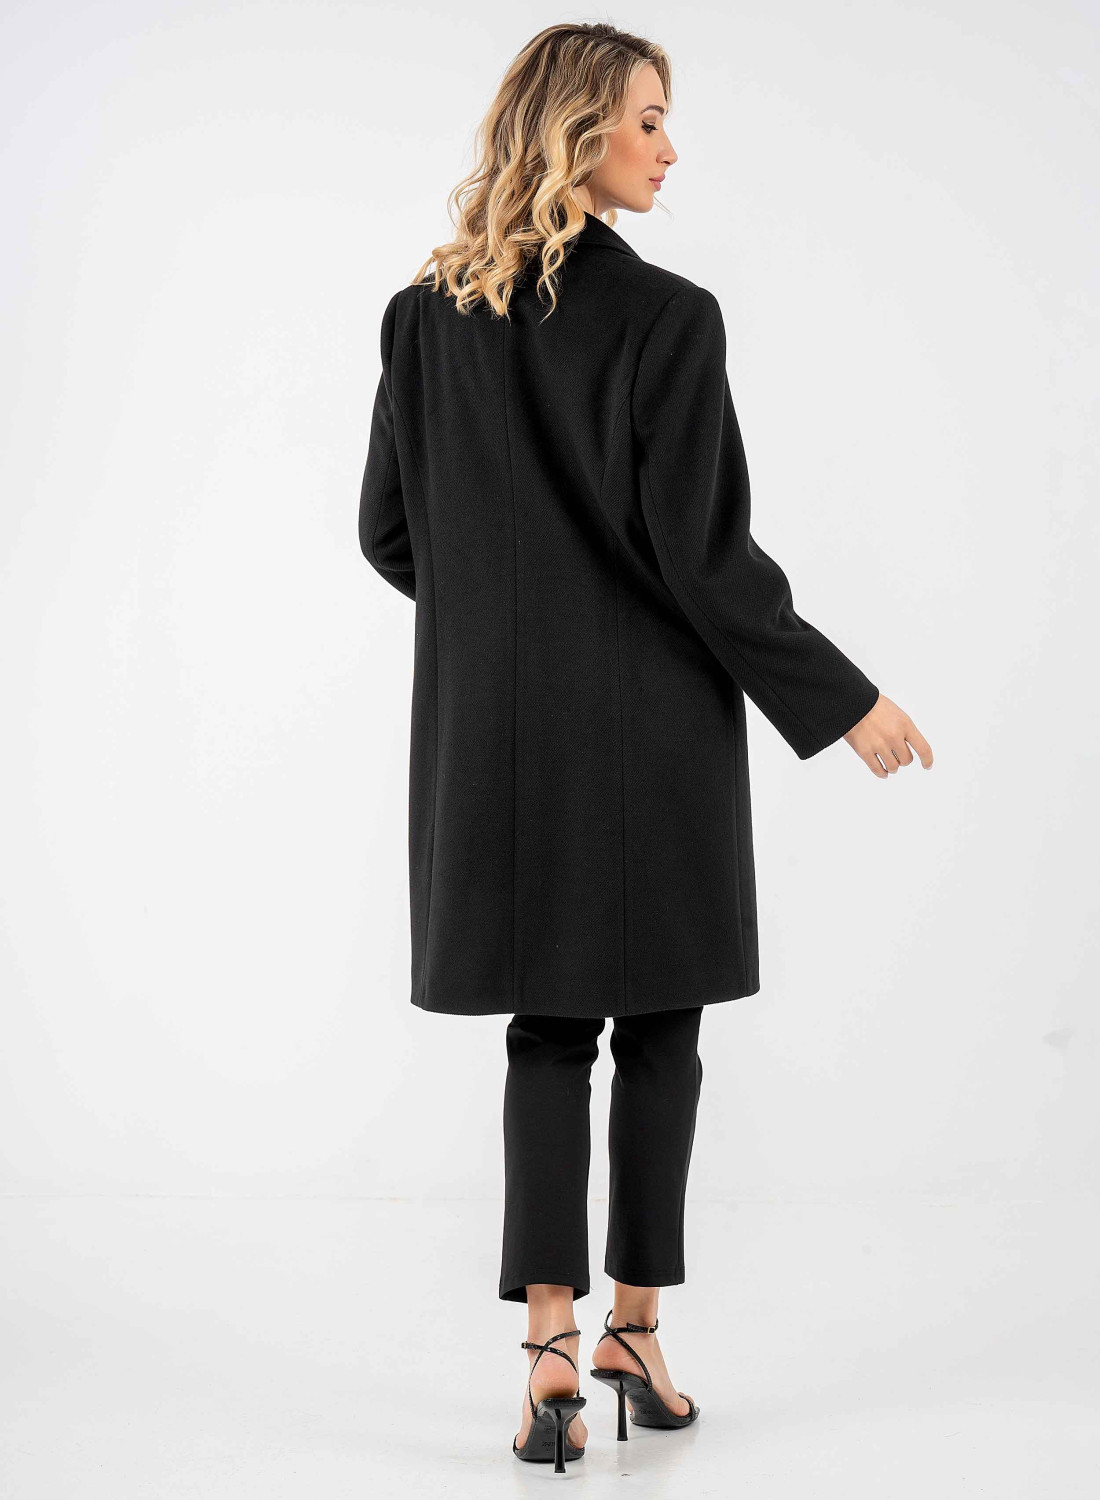 Μαύρο παλτο με μακρύ πέτο γιακά